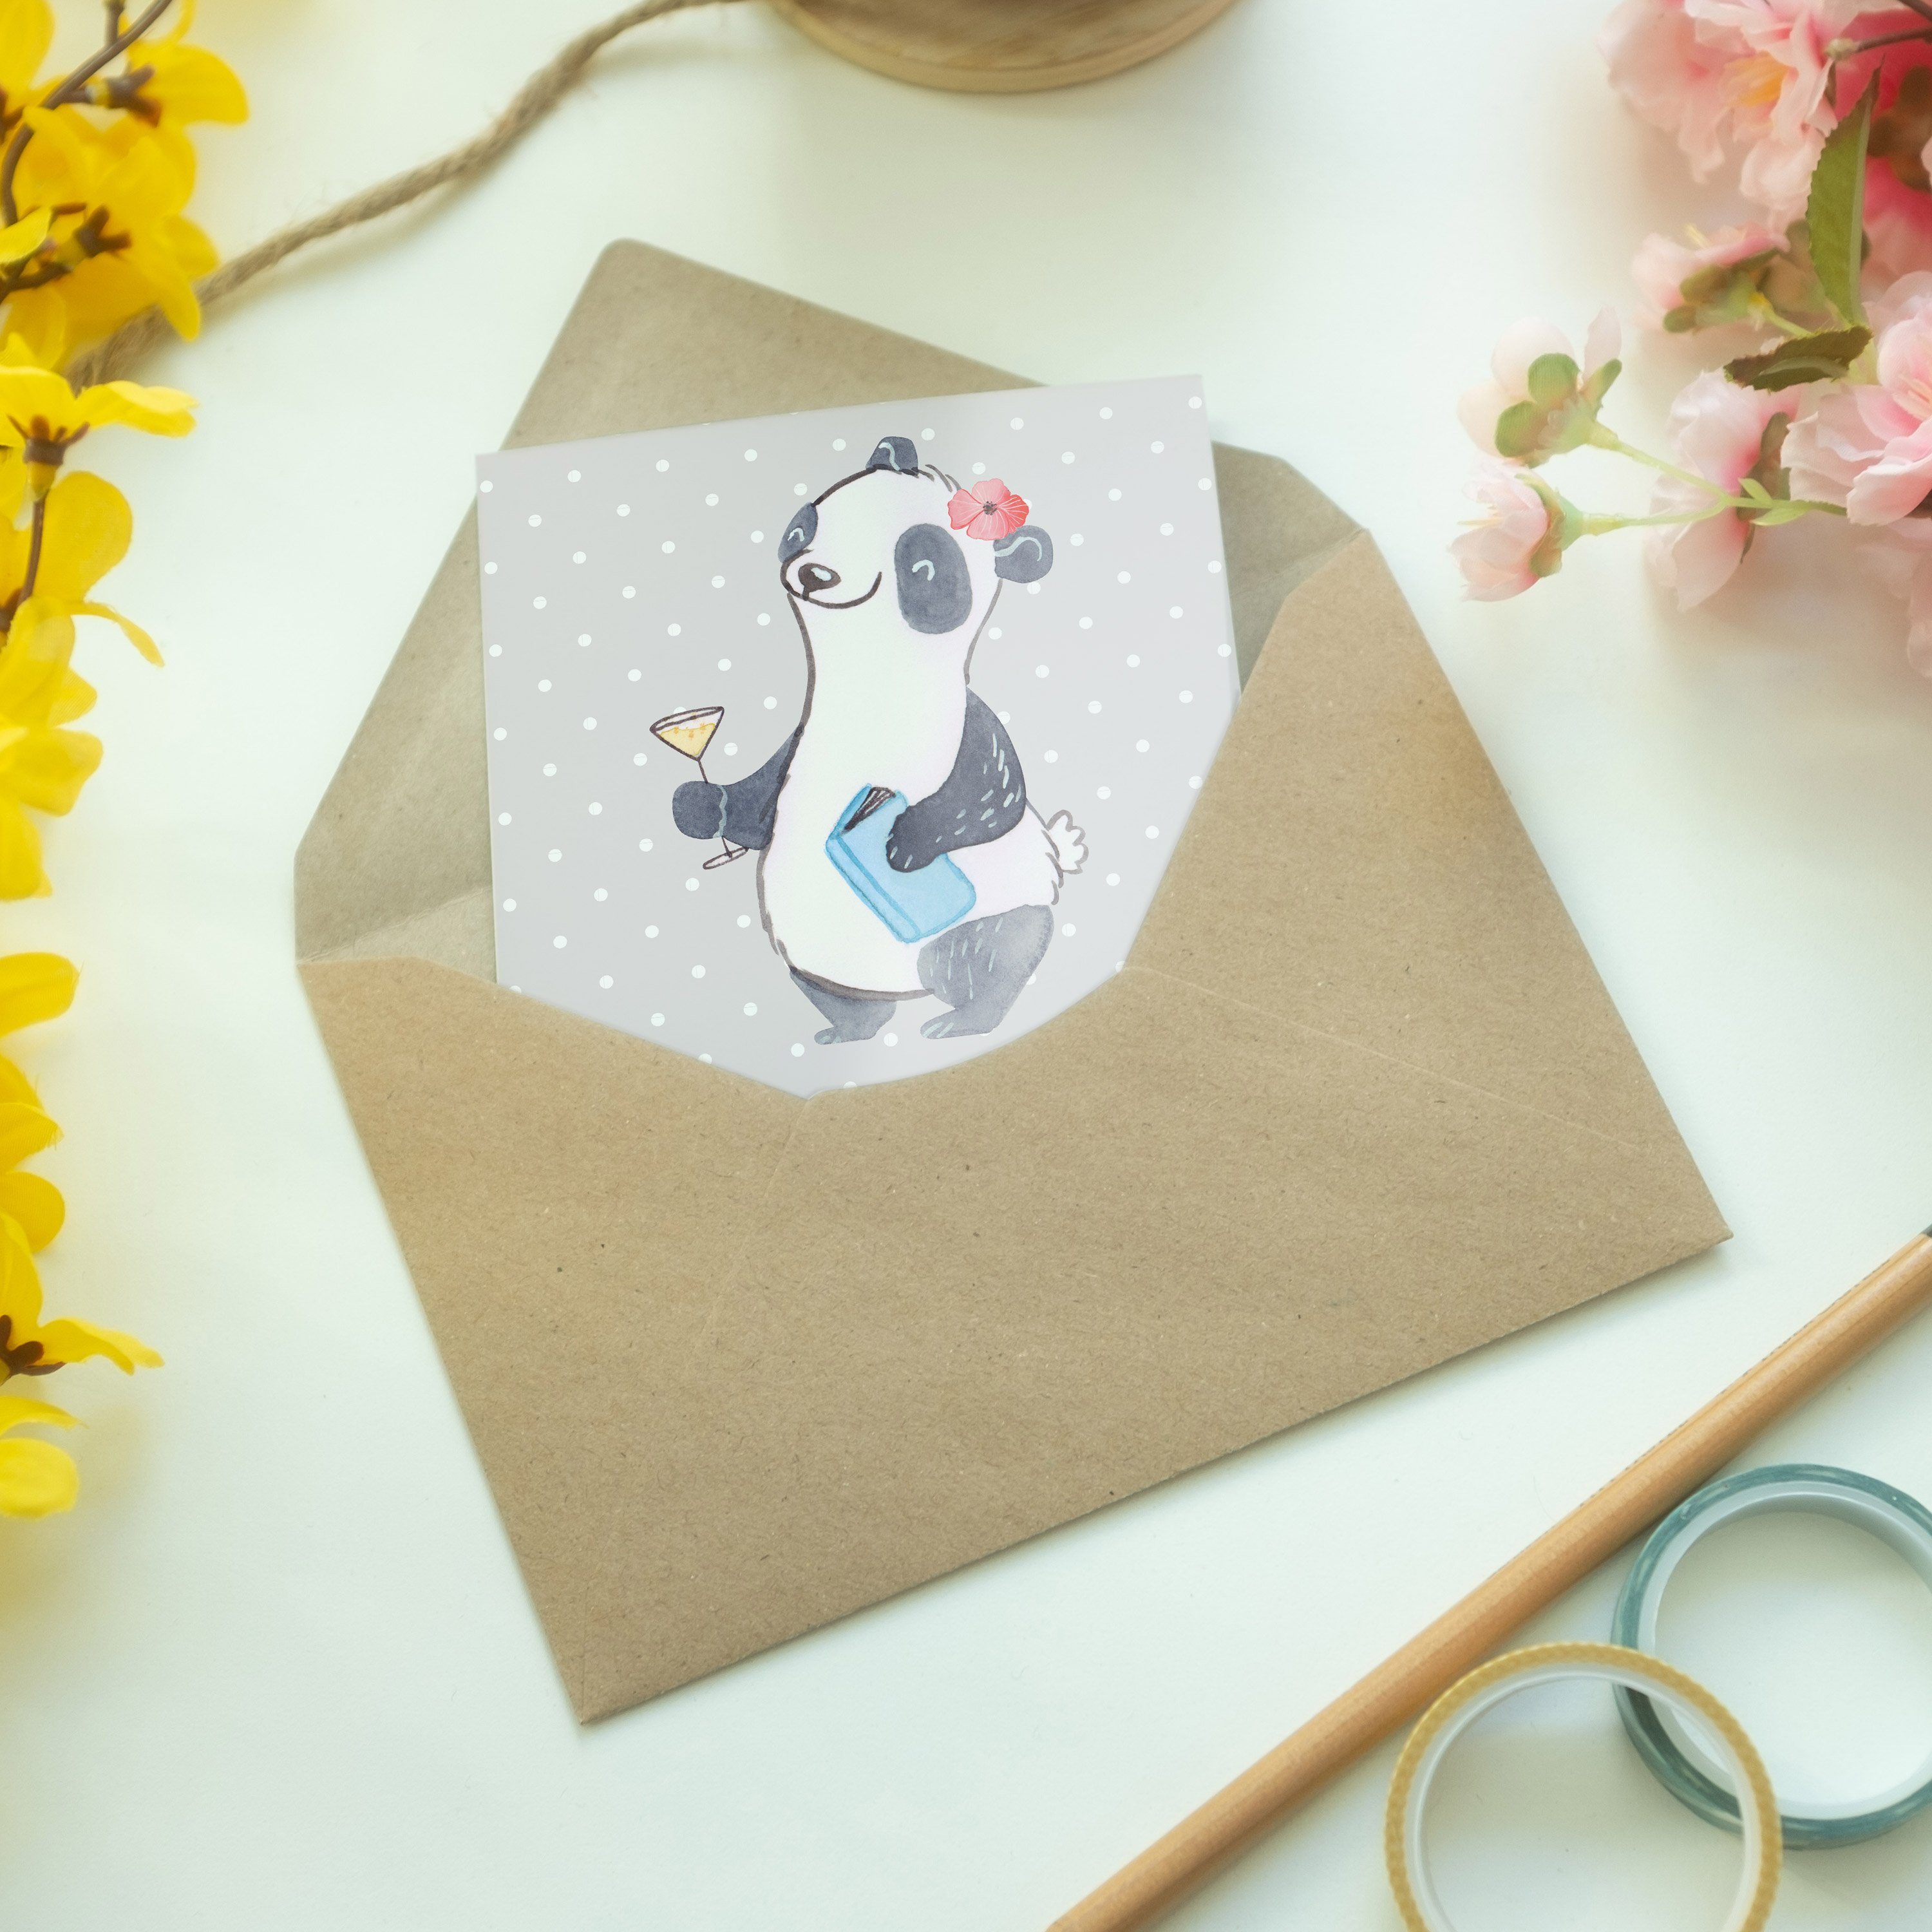 - Schule Beste Sitznachbarin & der Panda Mrs. - Grußkarte Geschenk, Grau Pastell Welt Mr. Panda